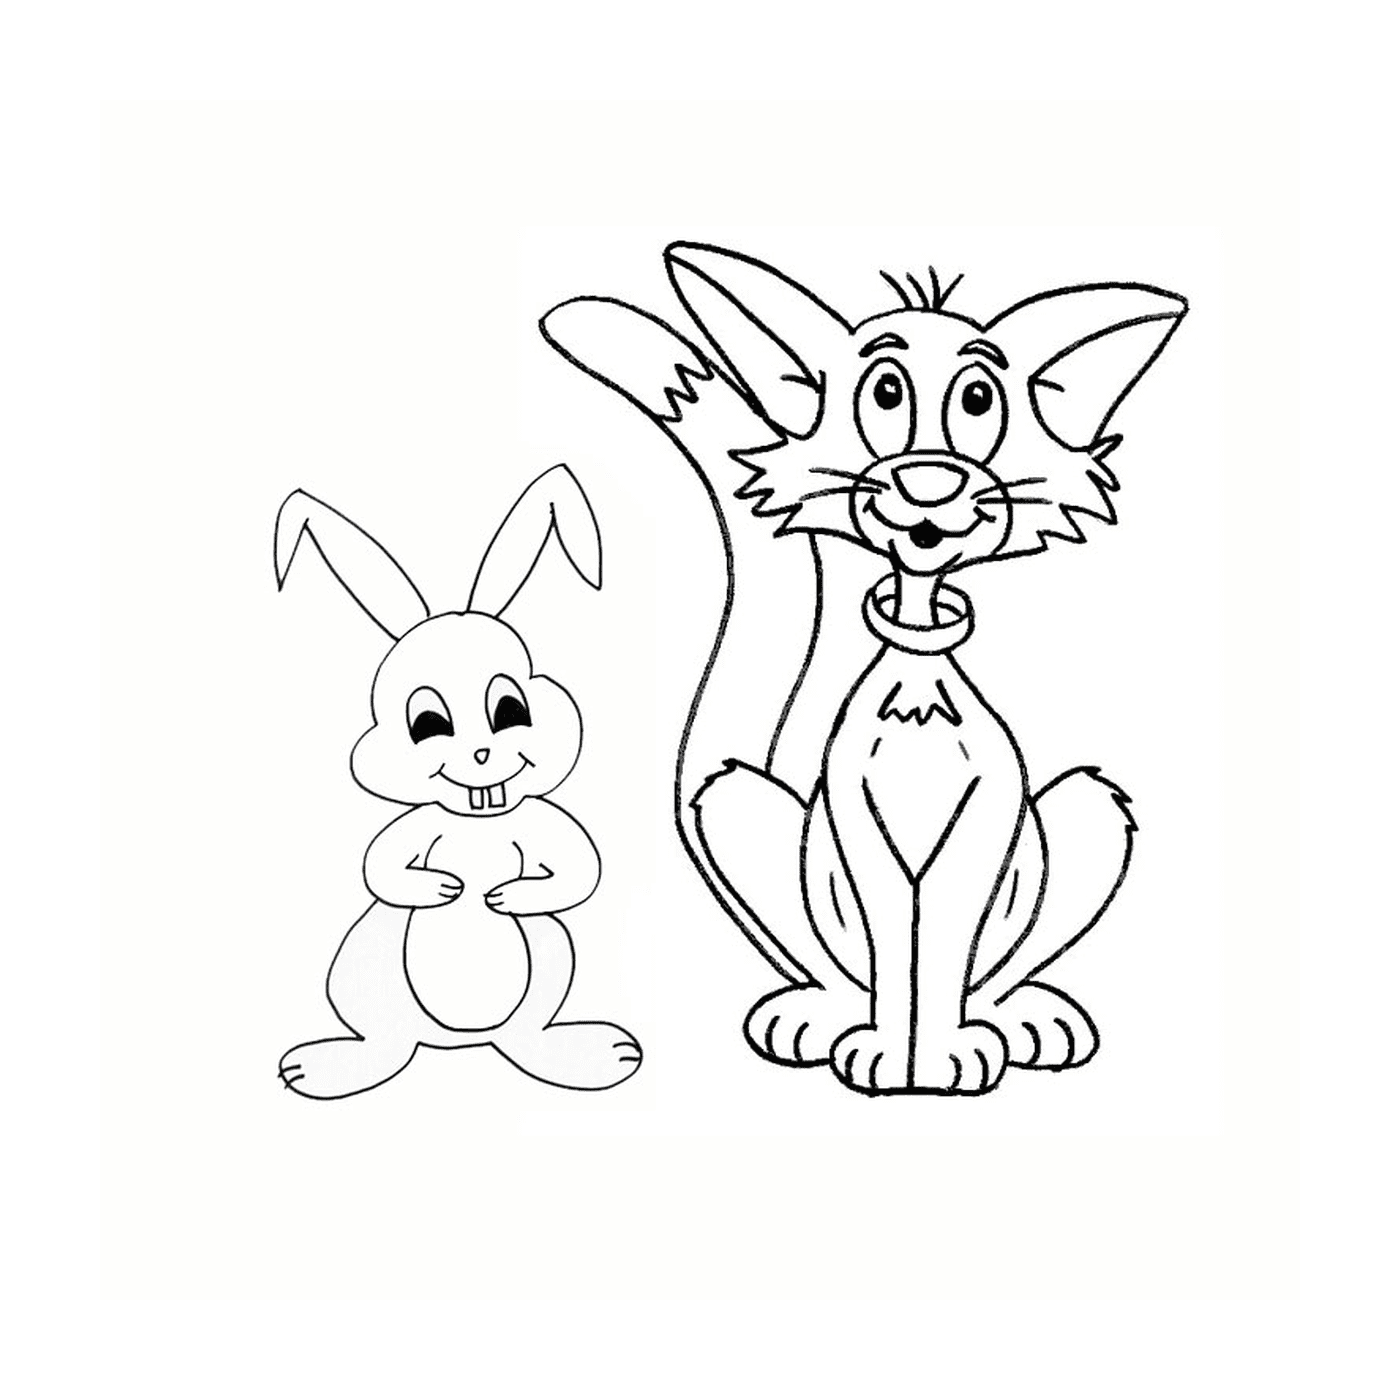  一只猫和一只兔子 一起画成一只猫和一只兔子 